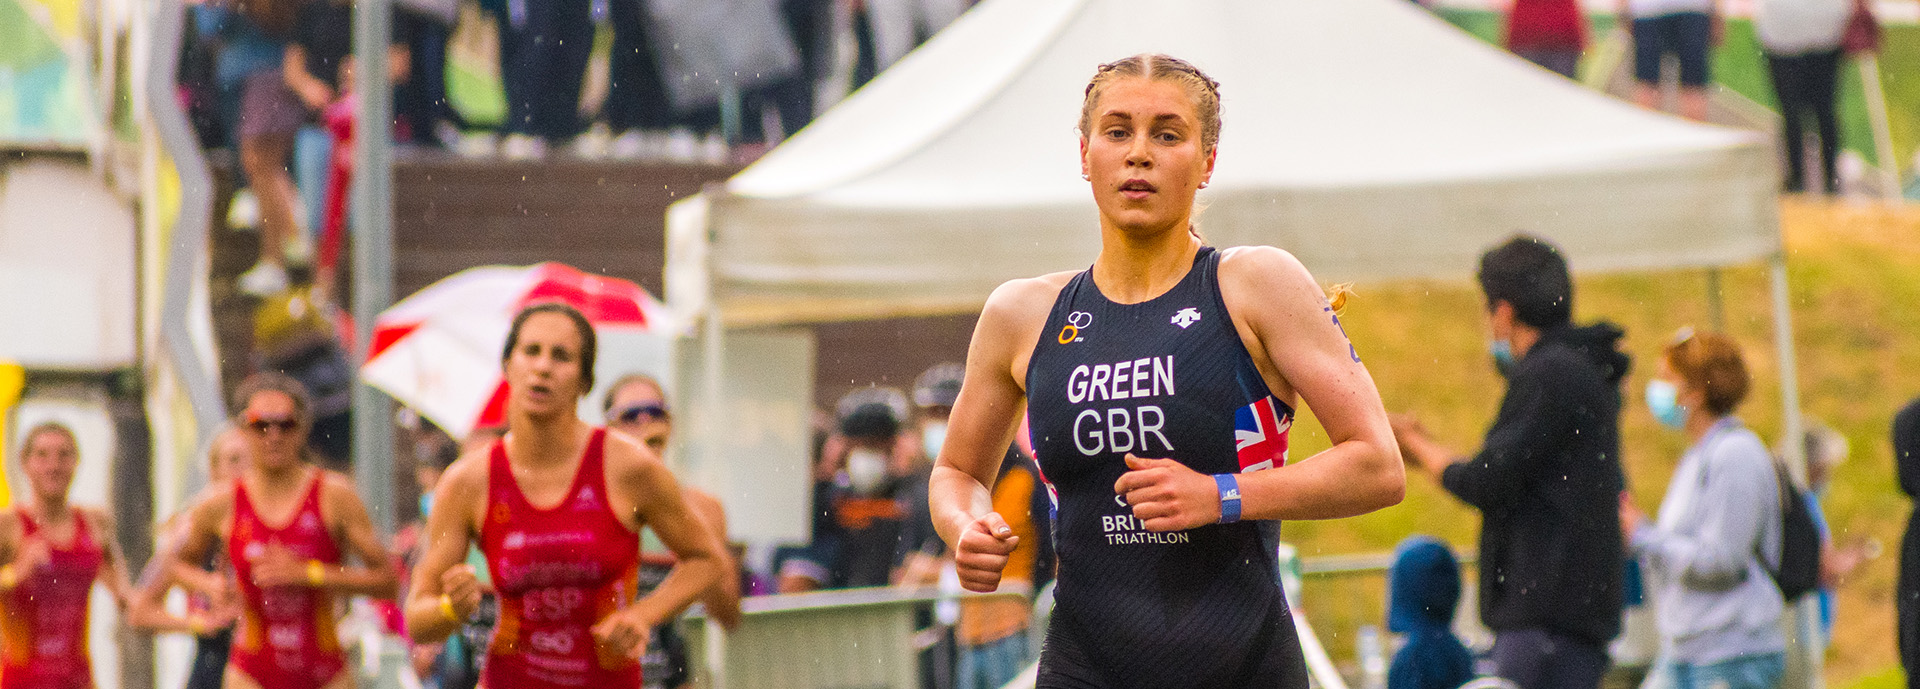 Sophia Green running